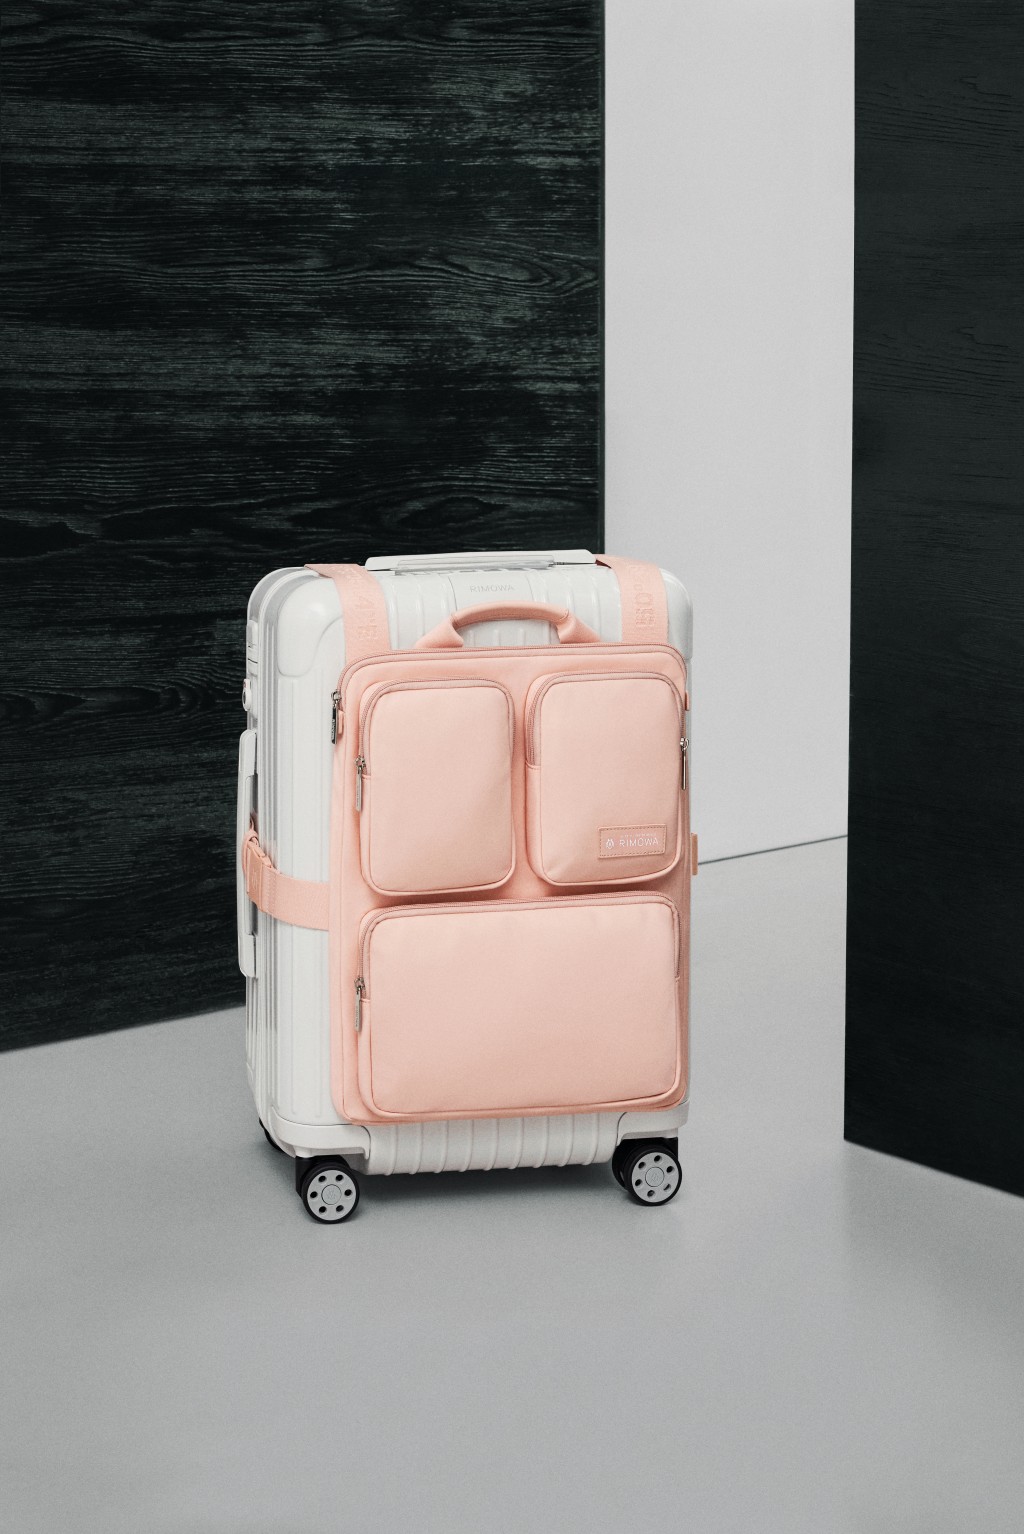 Rimowa花瓣粉色Harness行李挂袋/$4,250，不同大小间隔可妥善存放随身物品。